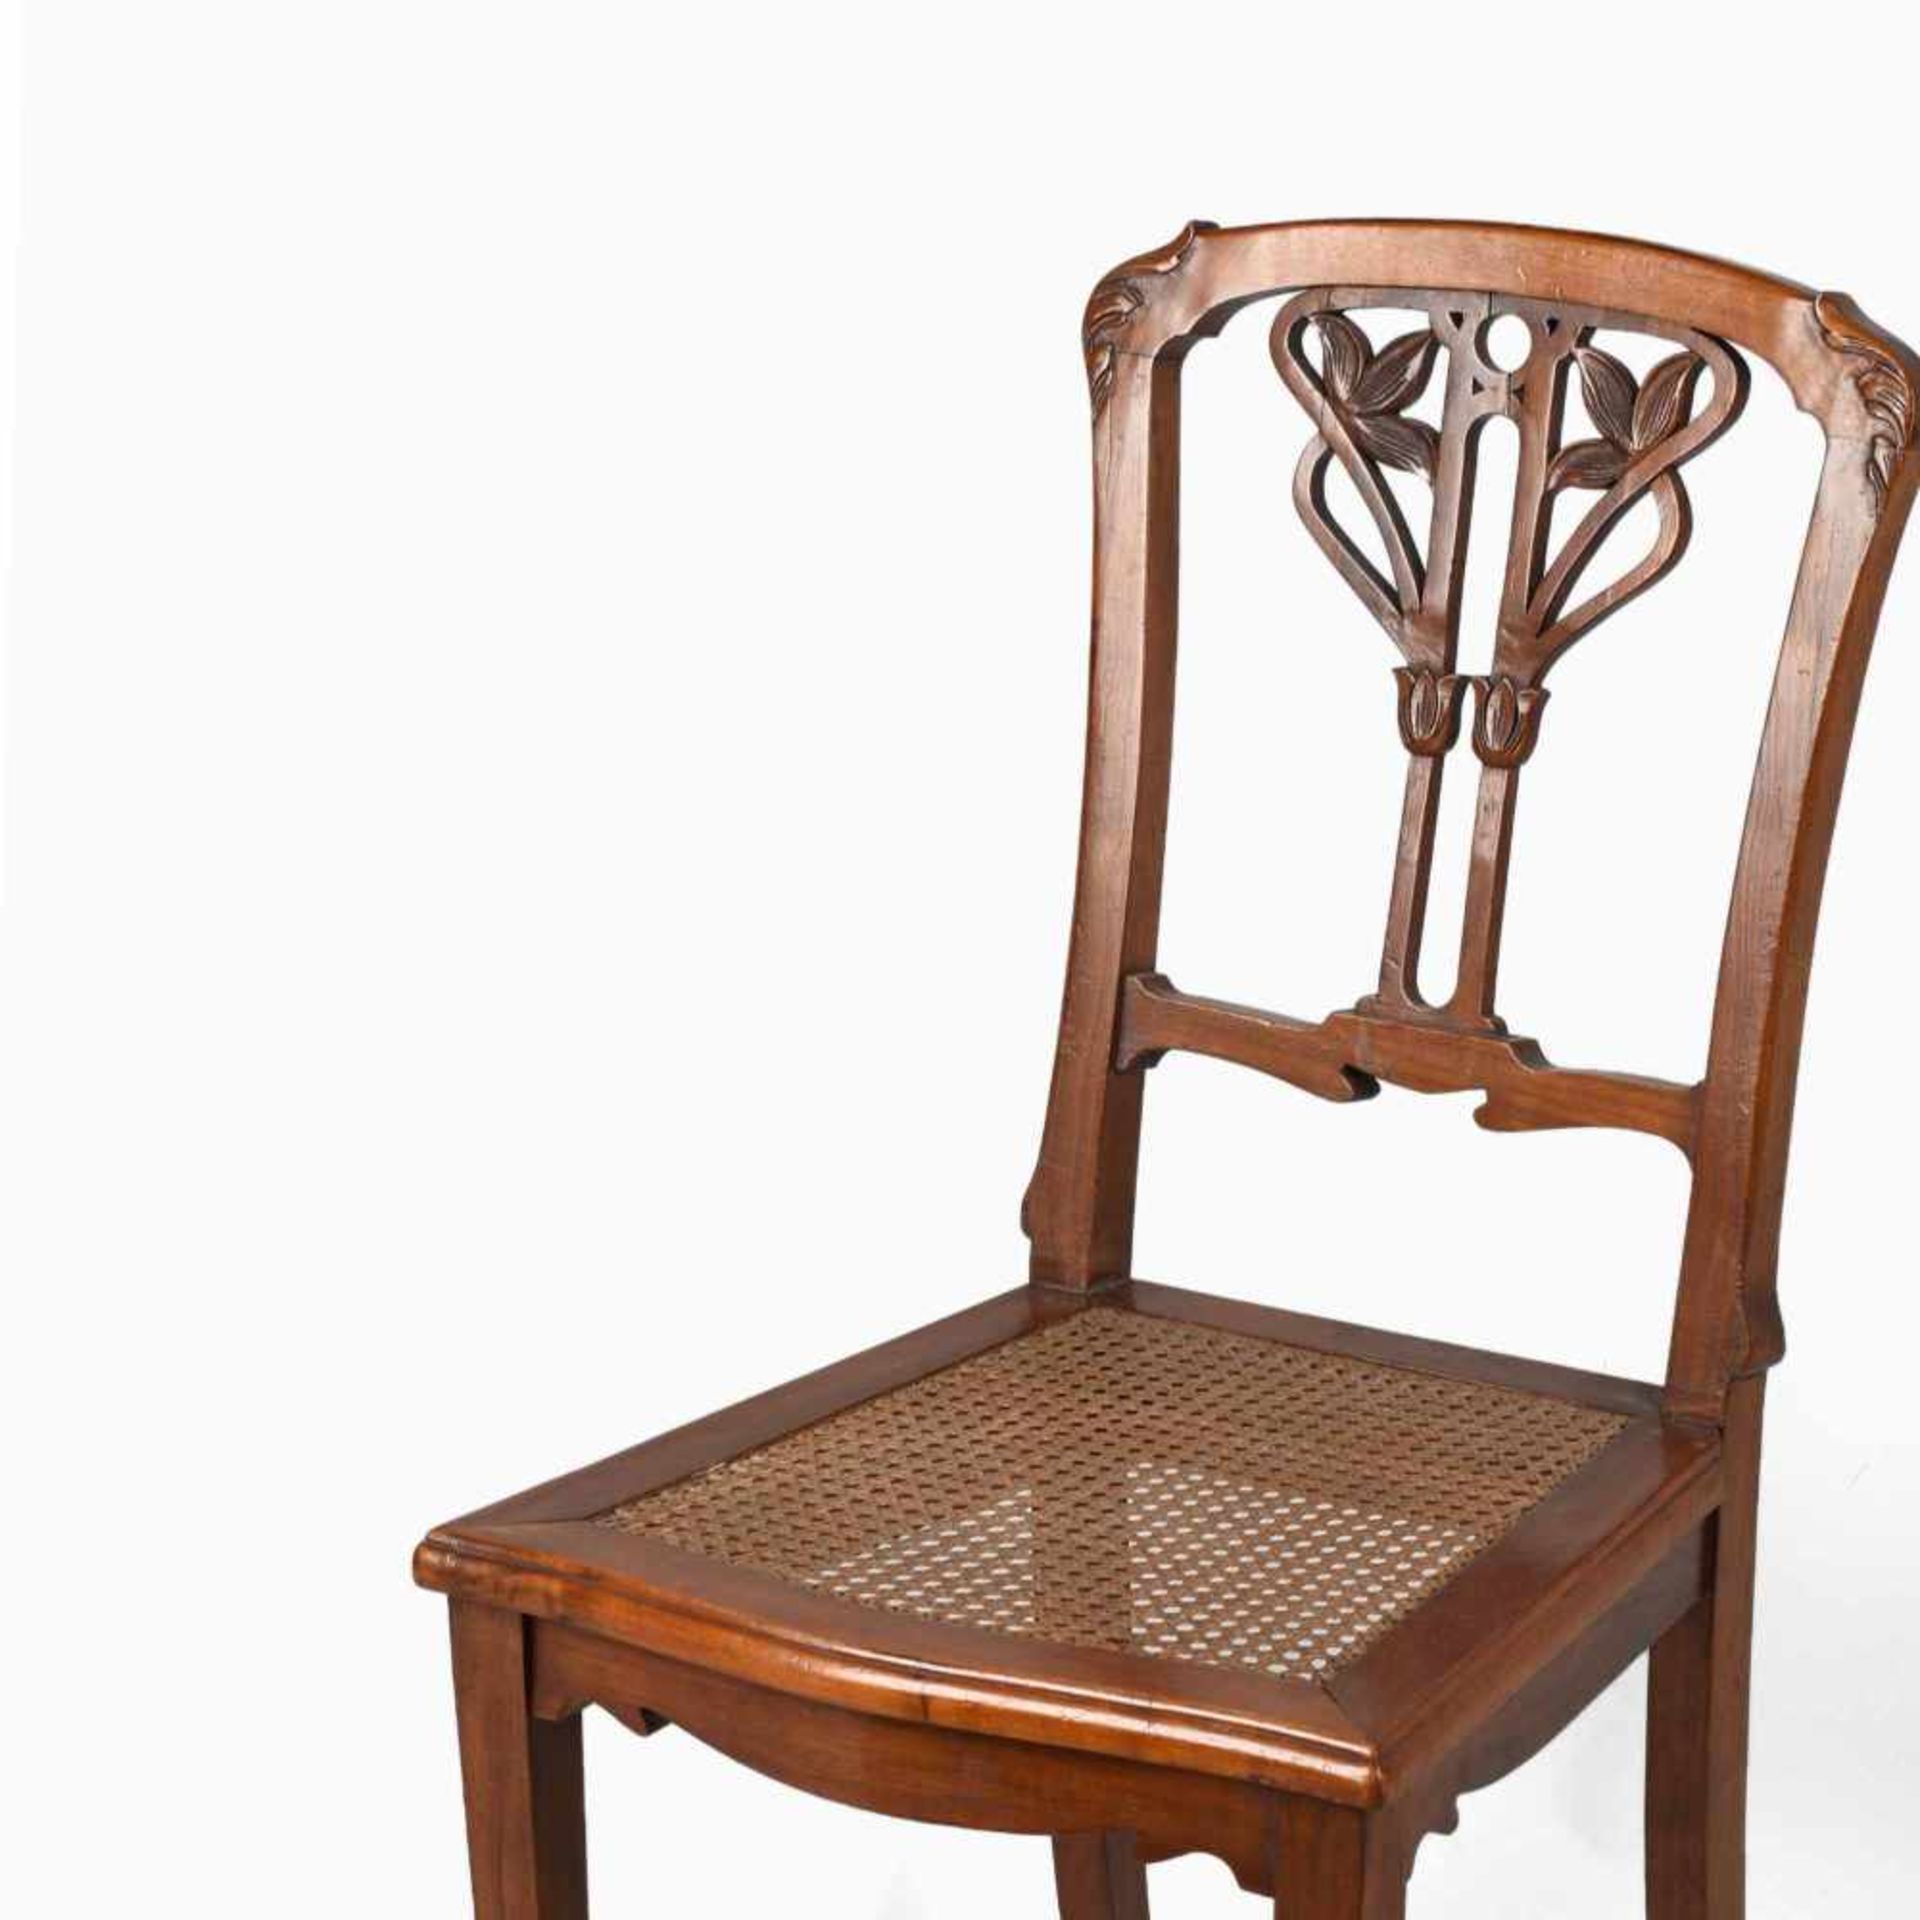 Jugendstil-Stuhl Nussbaum, schlanke Kantbeine mit ausgestellten Füßen, geschweift gesägte